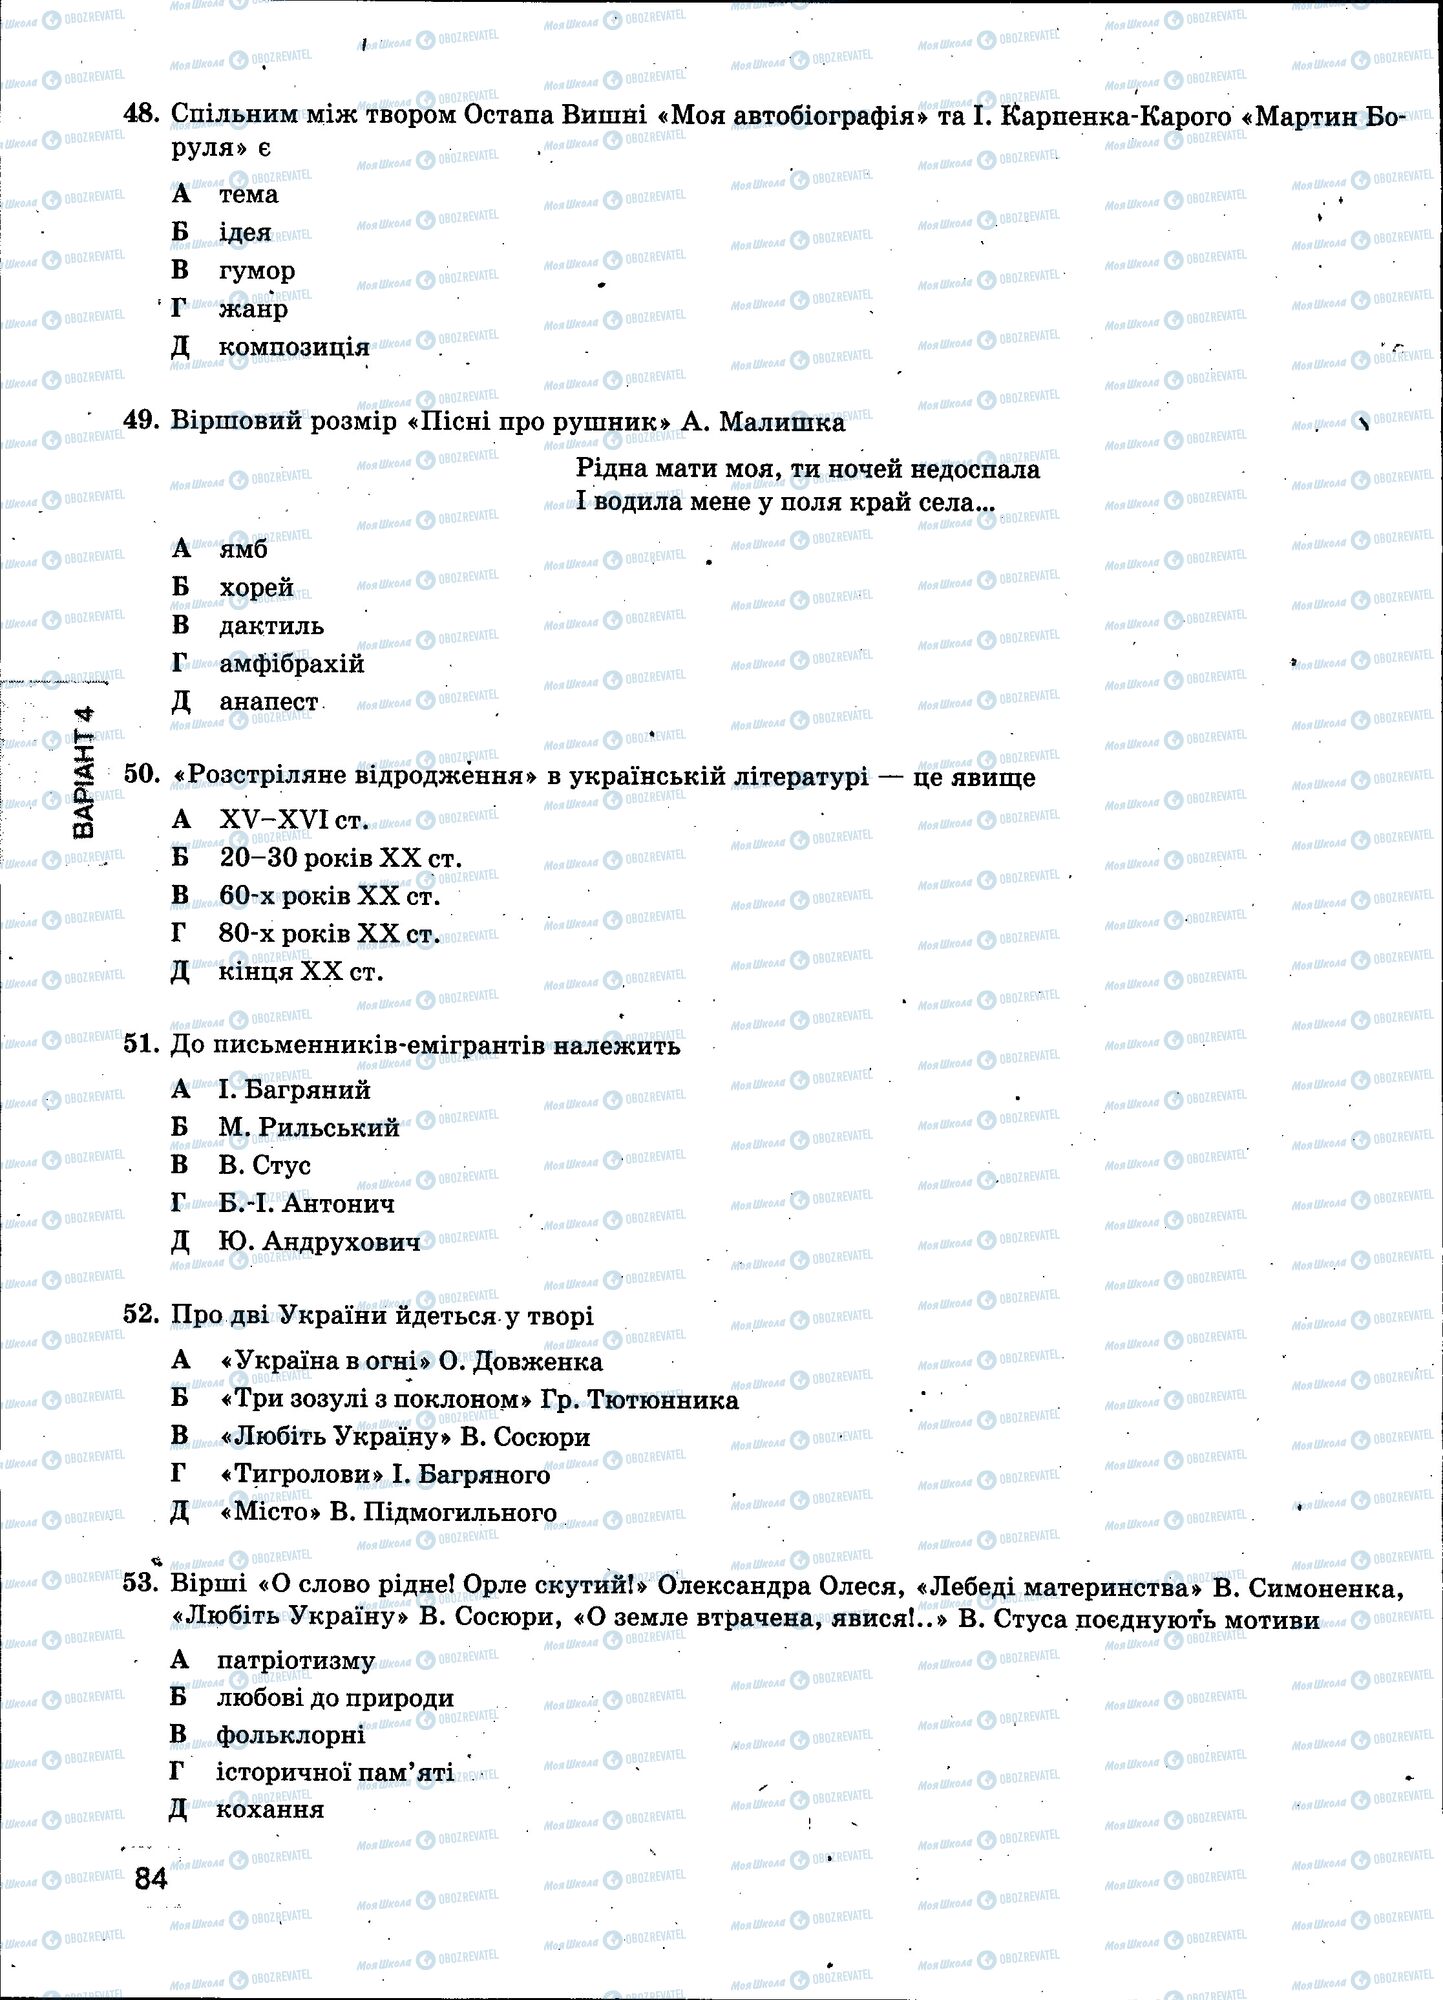 ЗНО Укр мова 11 класс страница 084